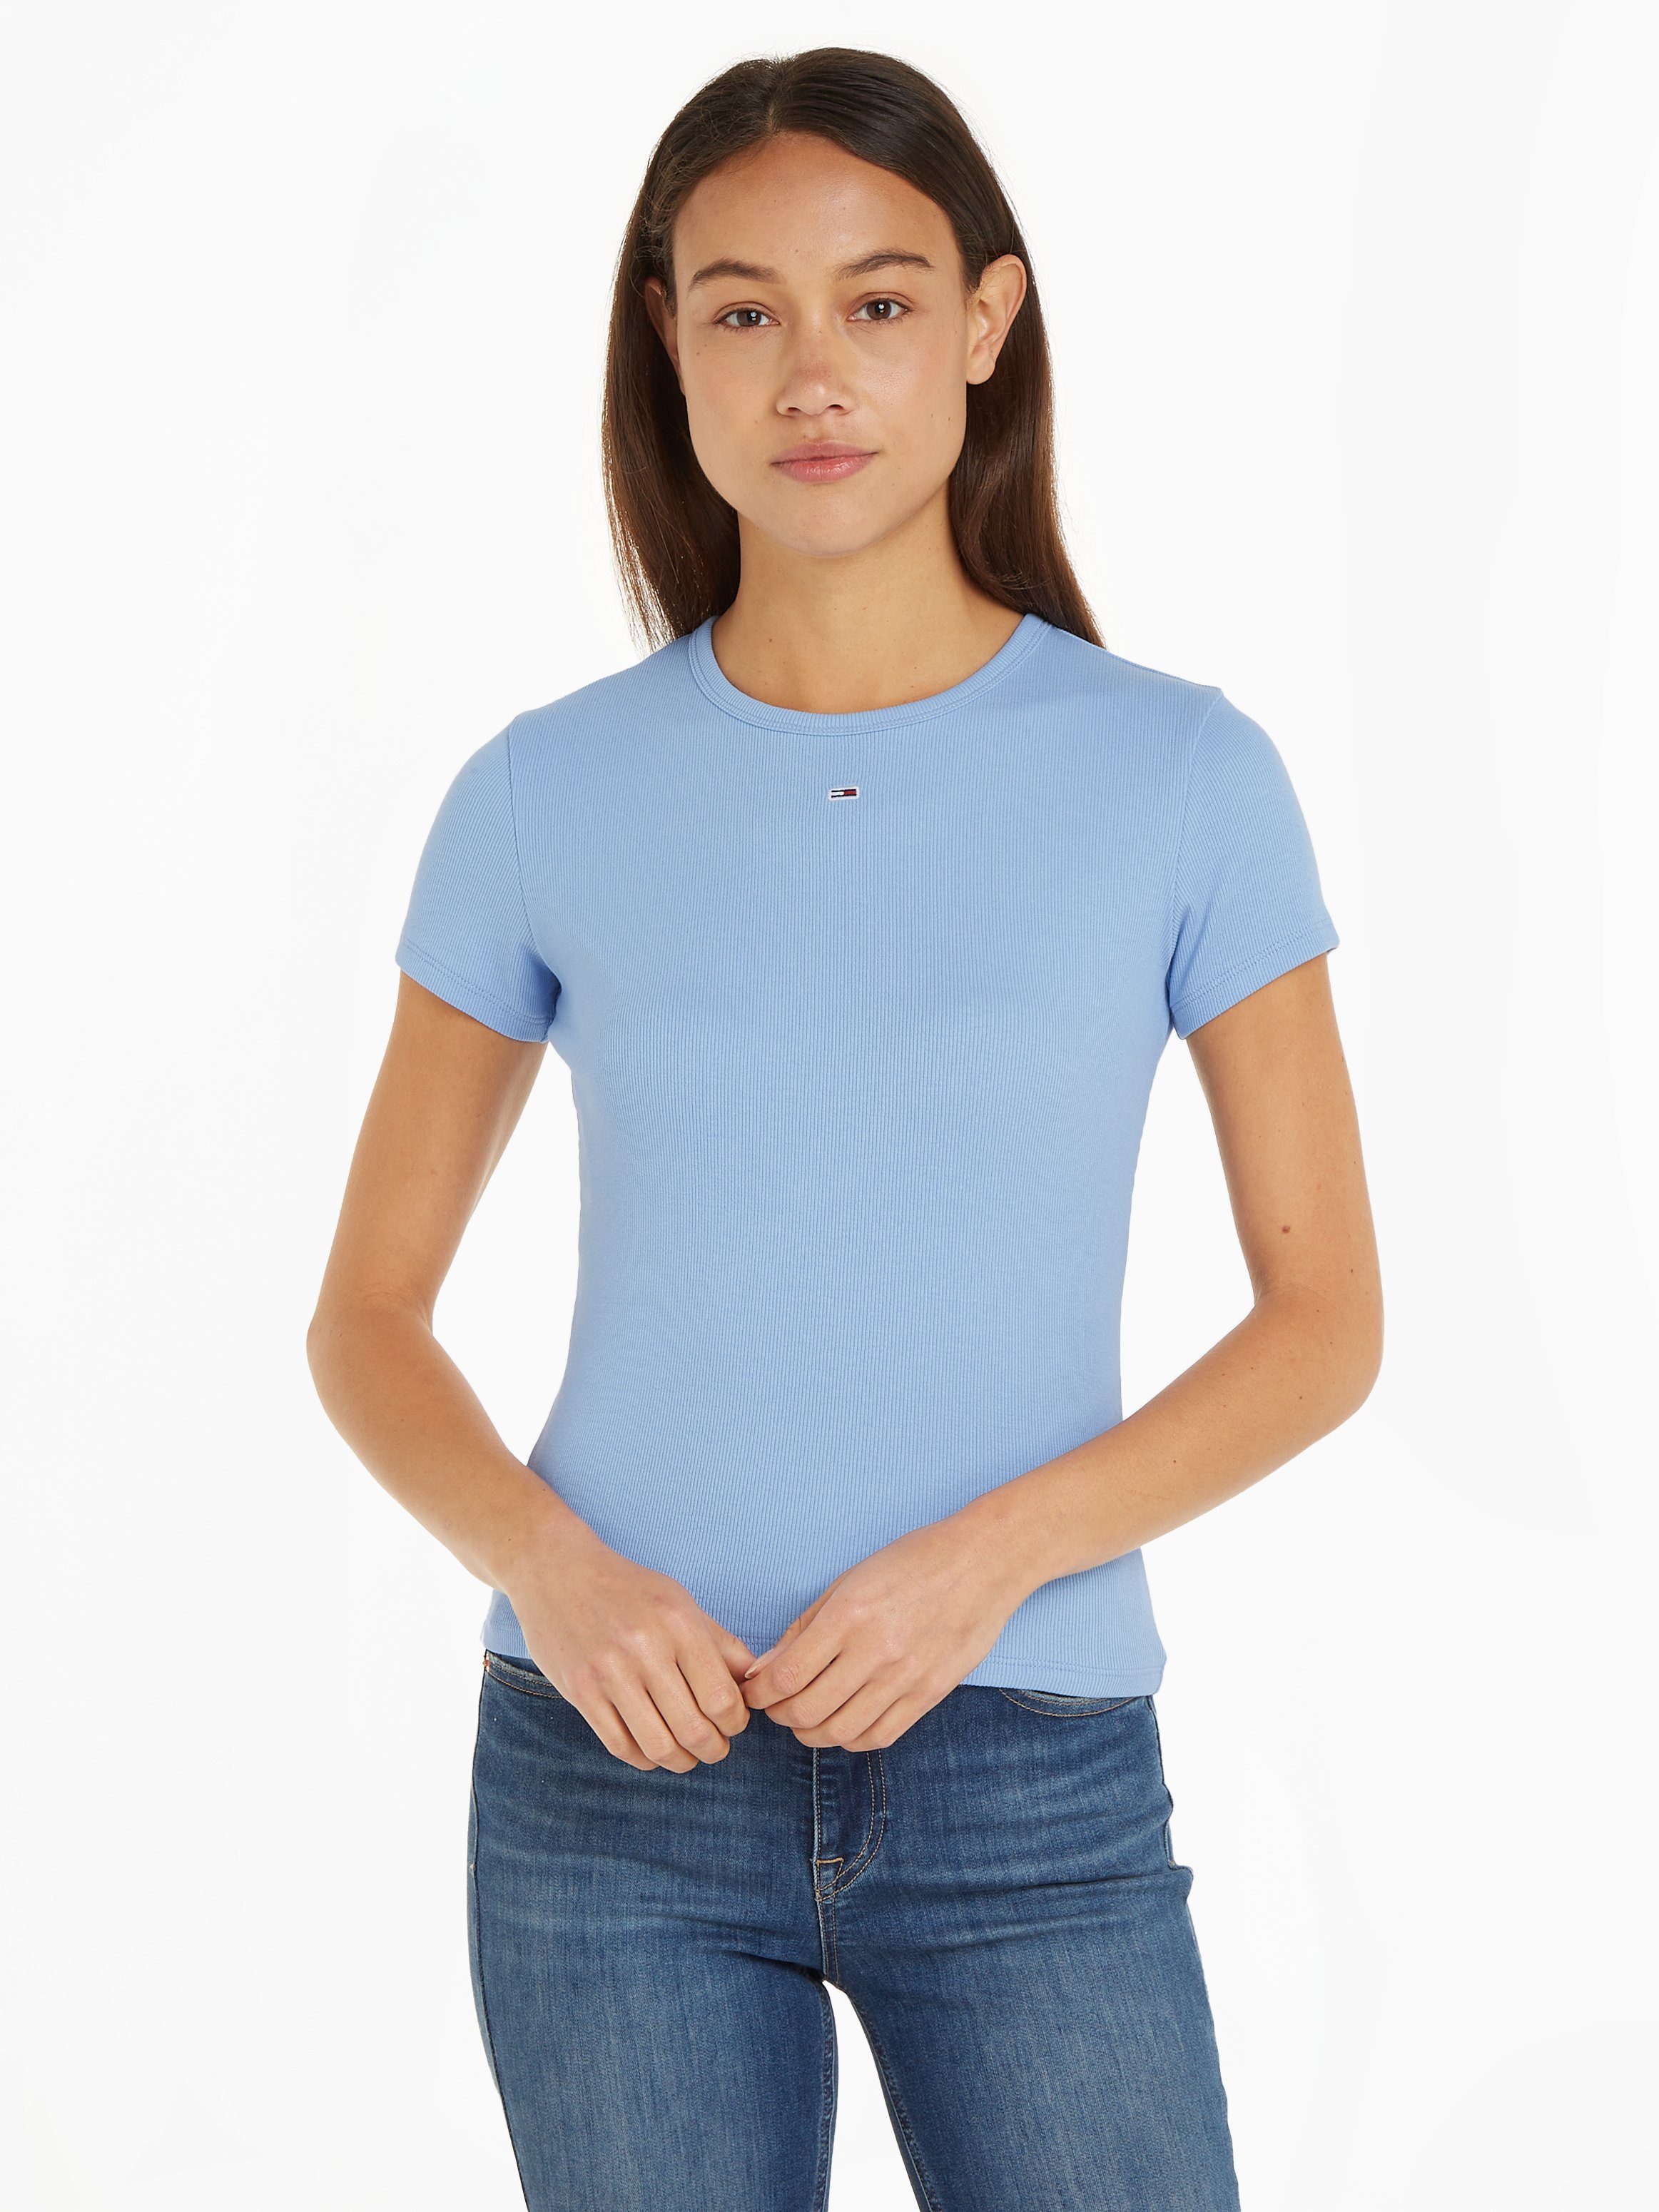 Tommy Hilfiger Damen T-Shirts online kaufen | OTTO